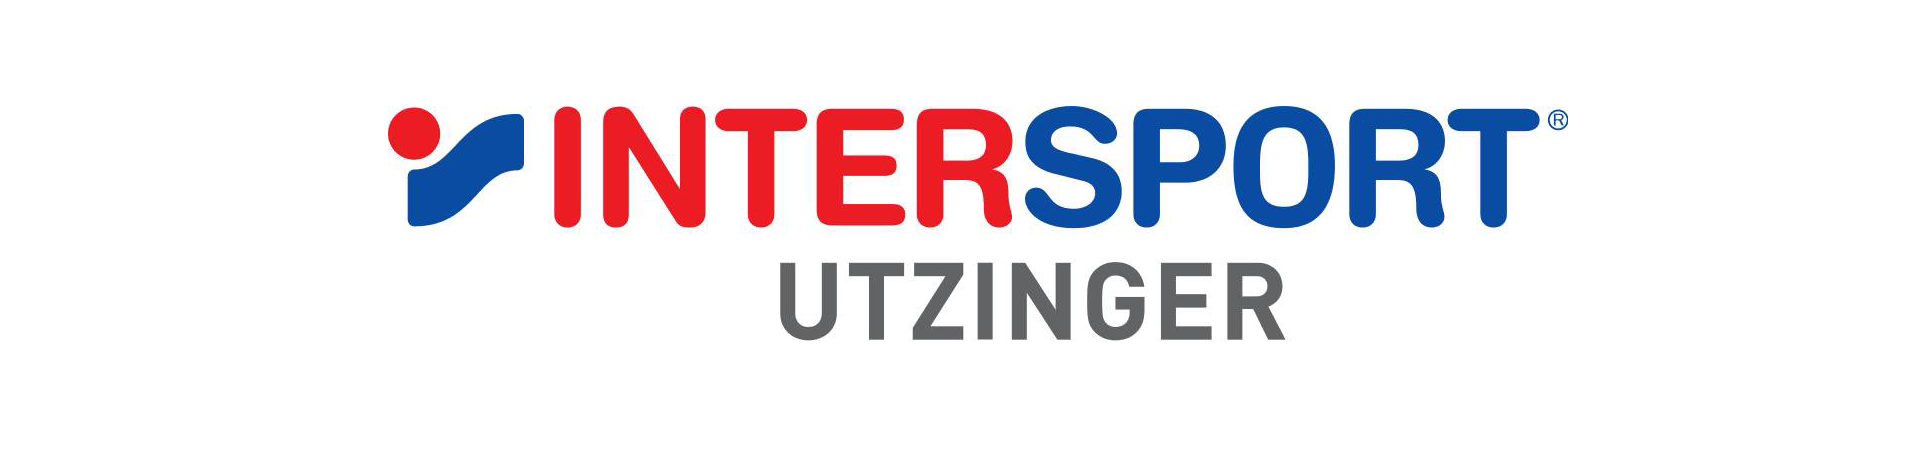 Utzinger Rennsport | Intersport Utzinger